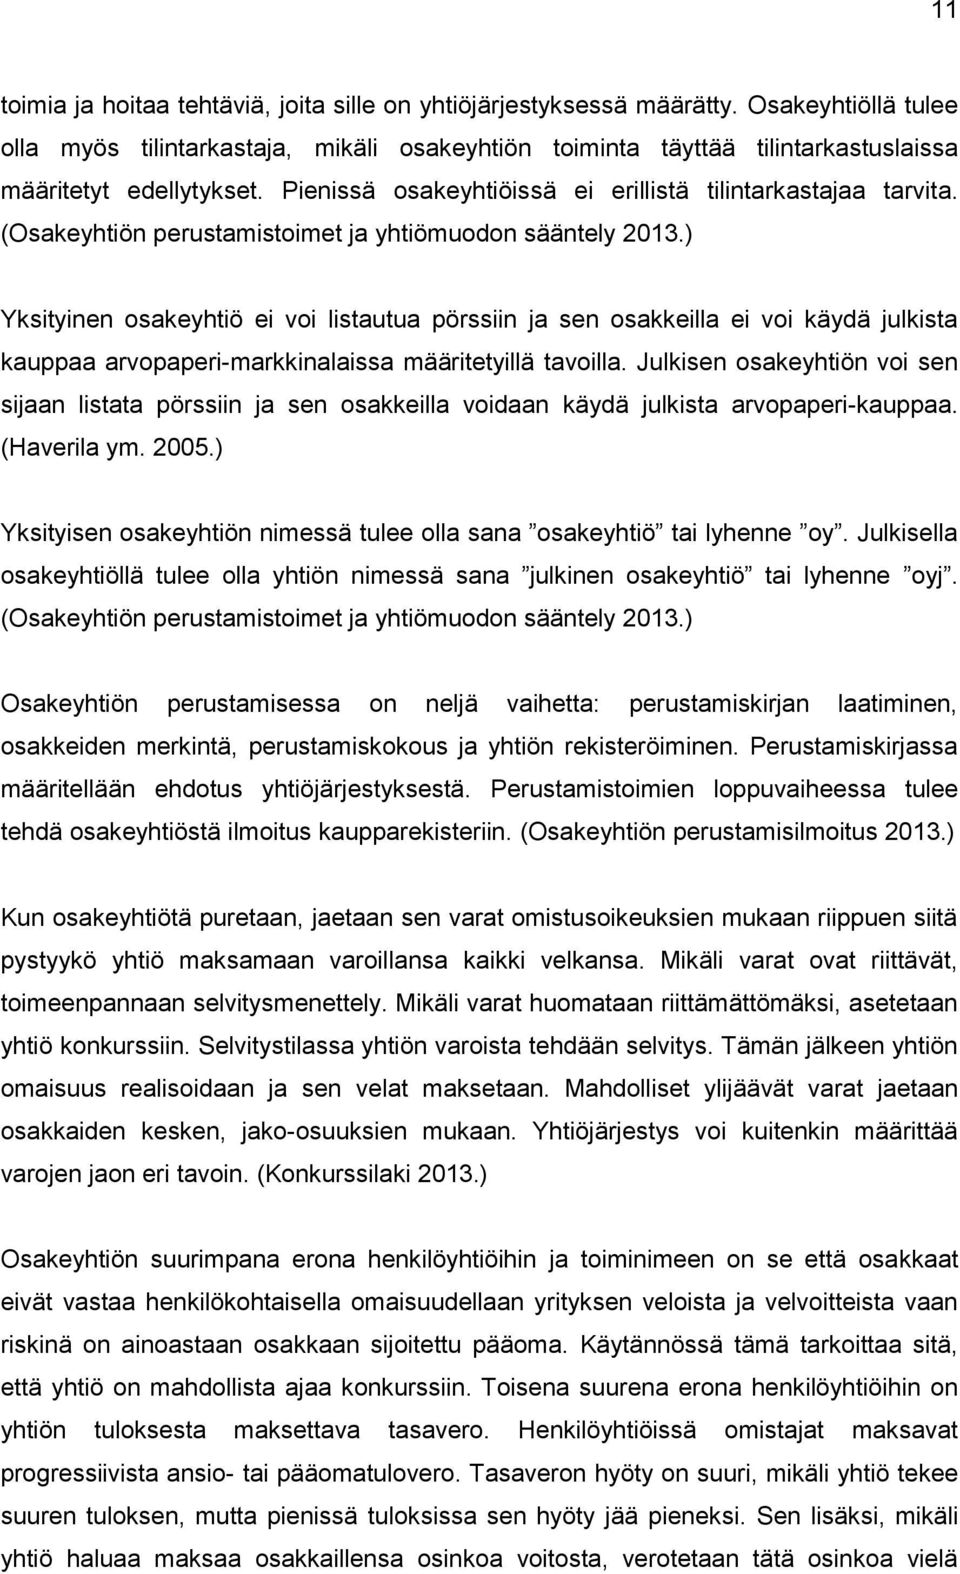 (Osakeyhtiön perustamistoimet ja yhtiömuodon sääntely 2013.